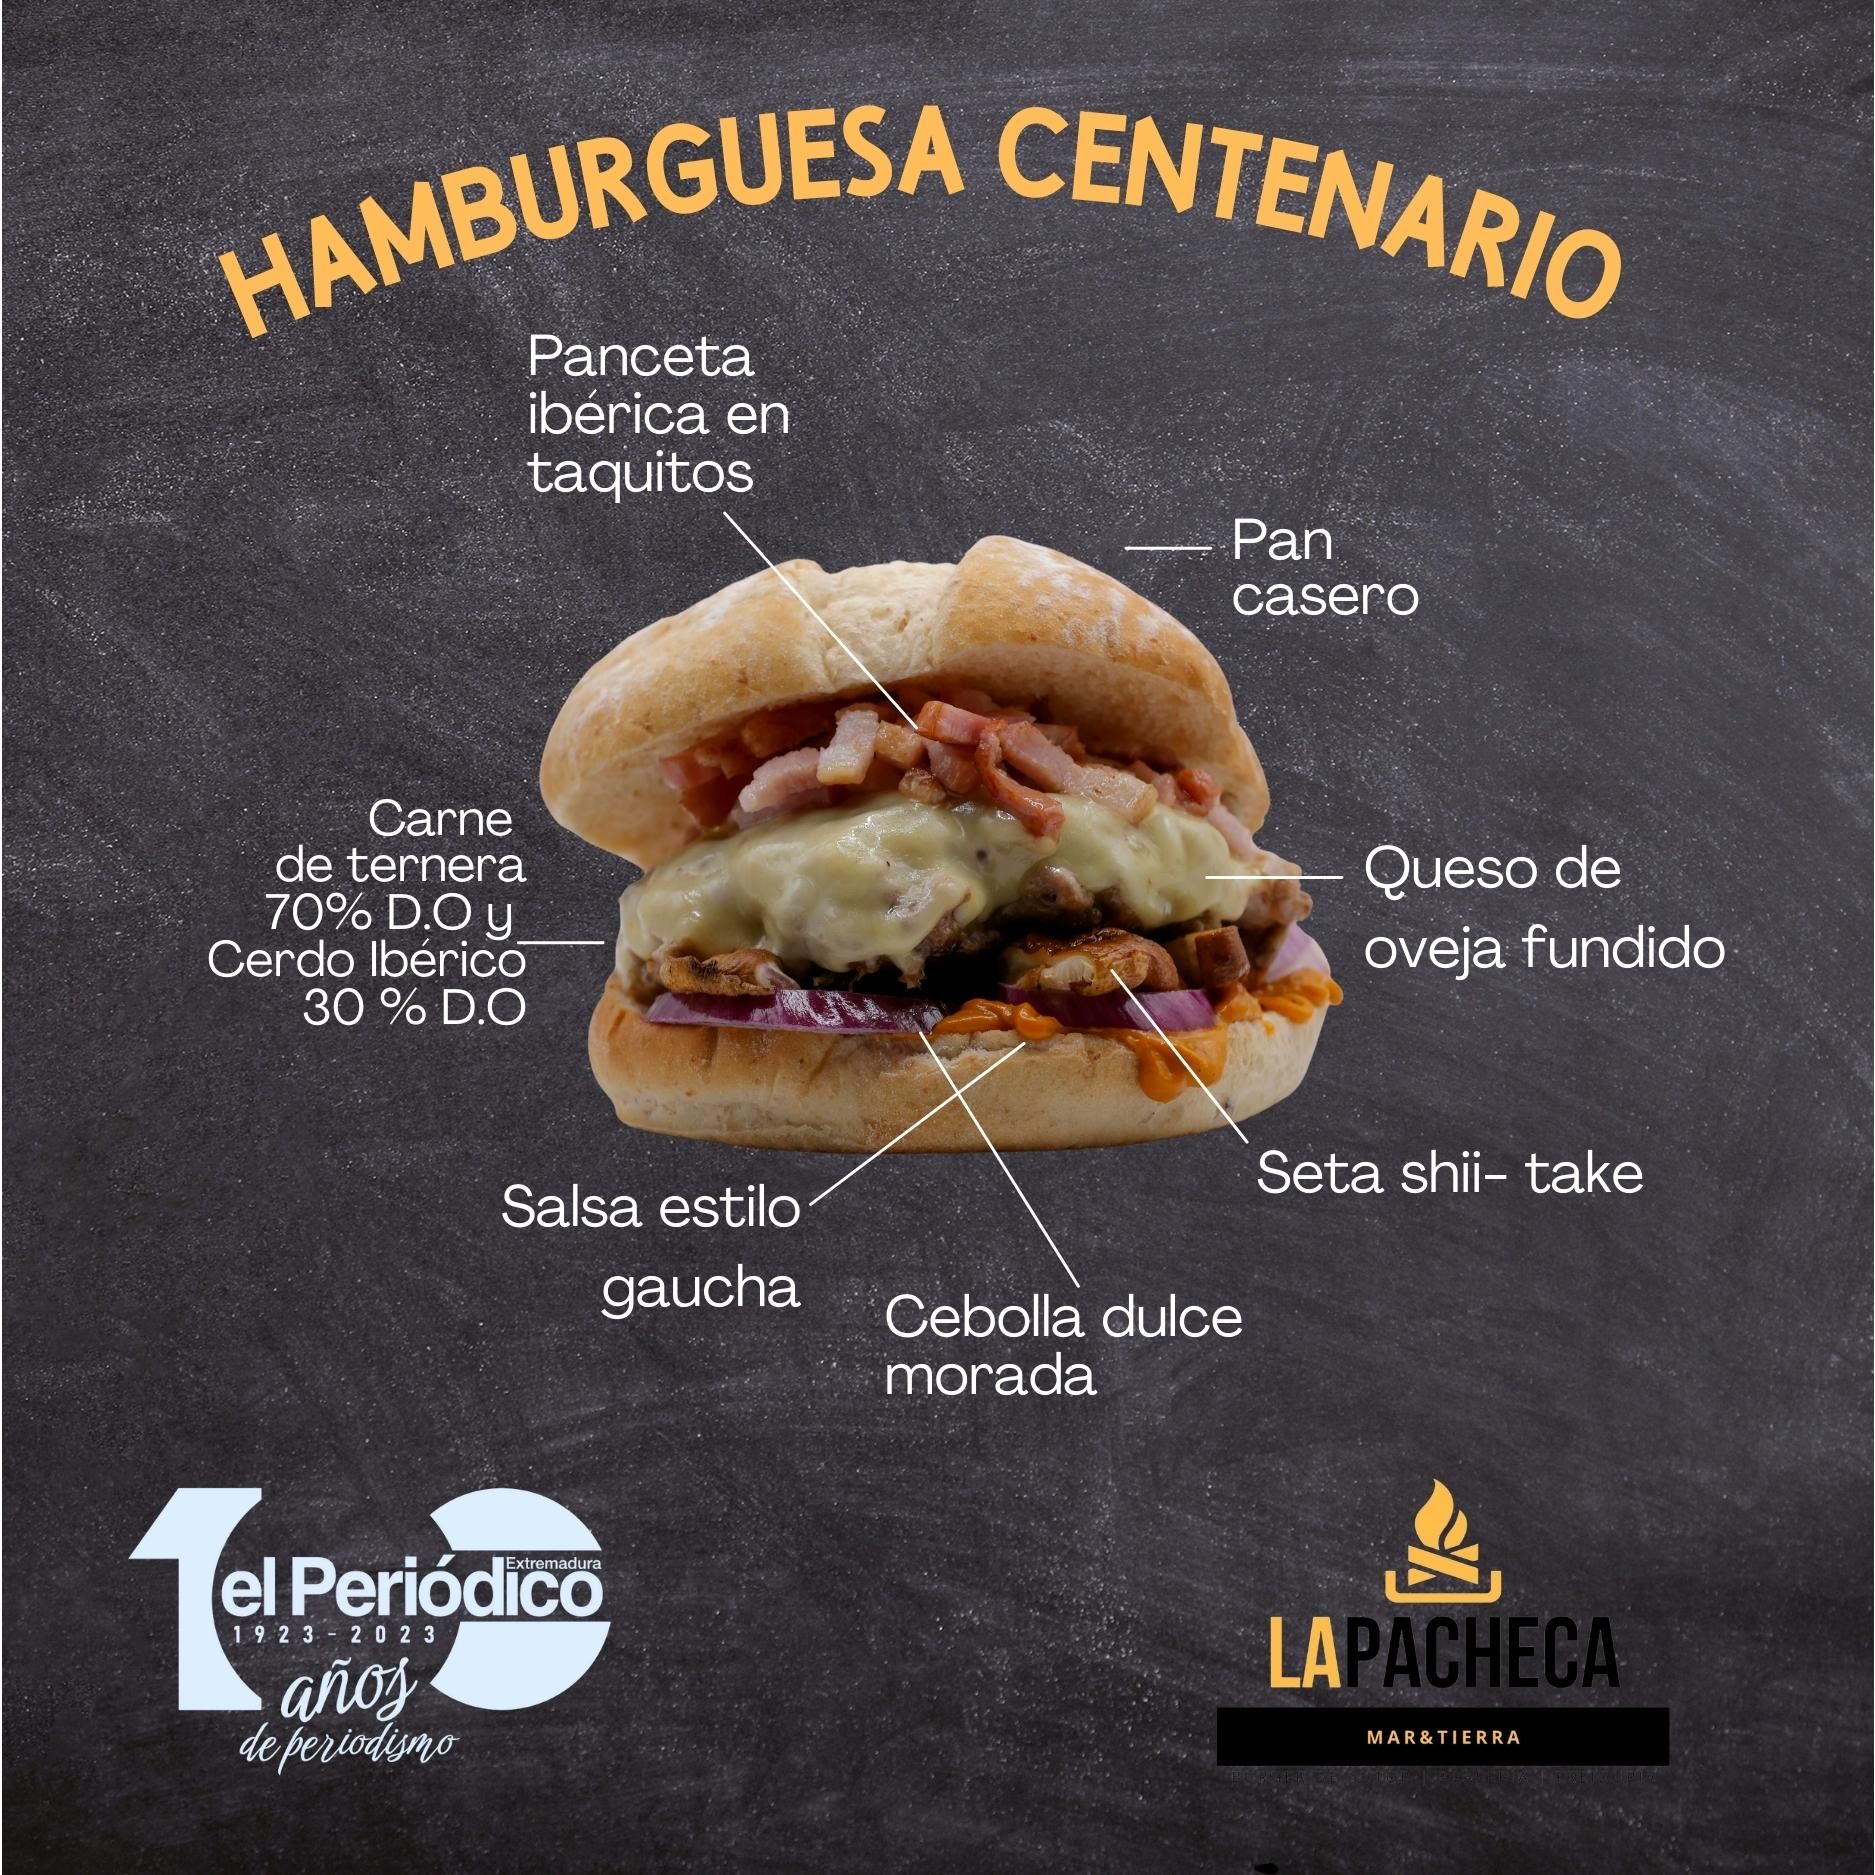 Así es la Hamburguesa Centenario, creación de Nacho Tello con motivo del Centenario de El Periódico Extremadura.